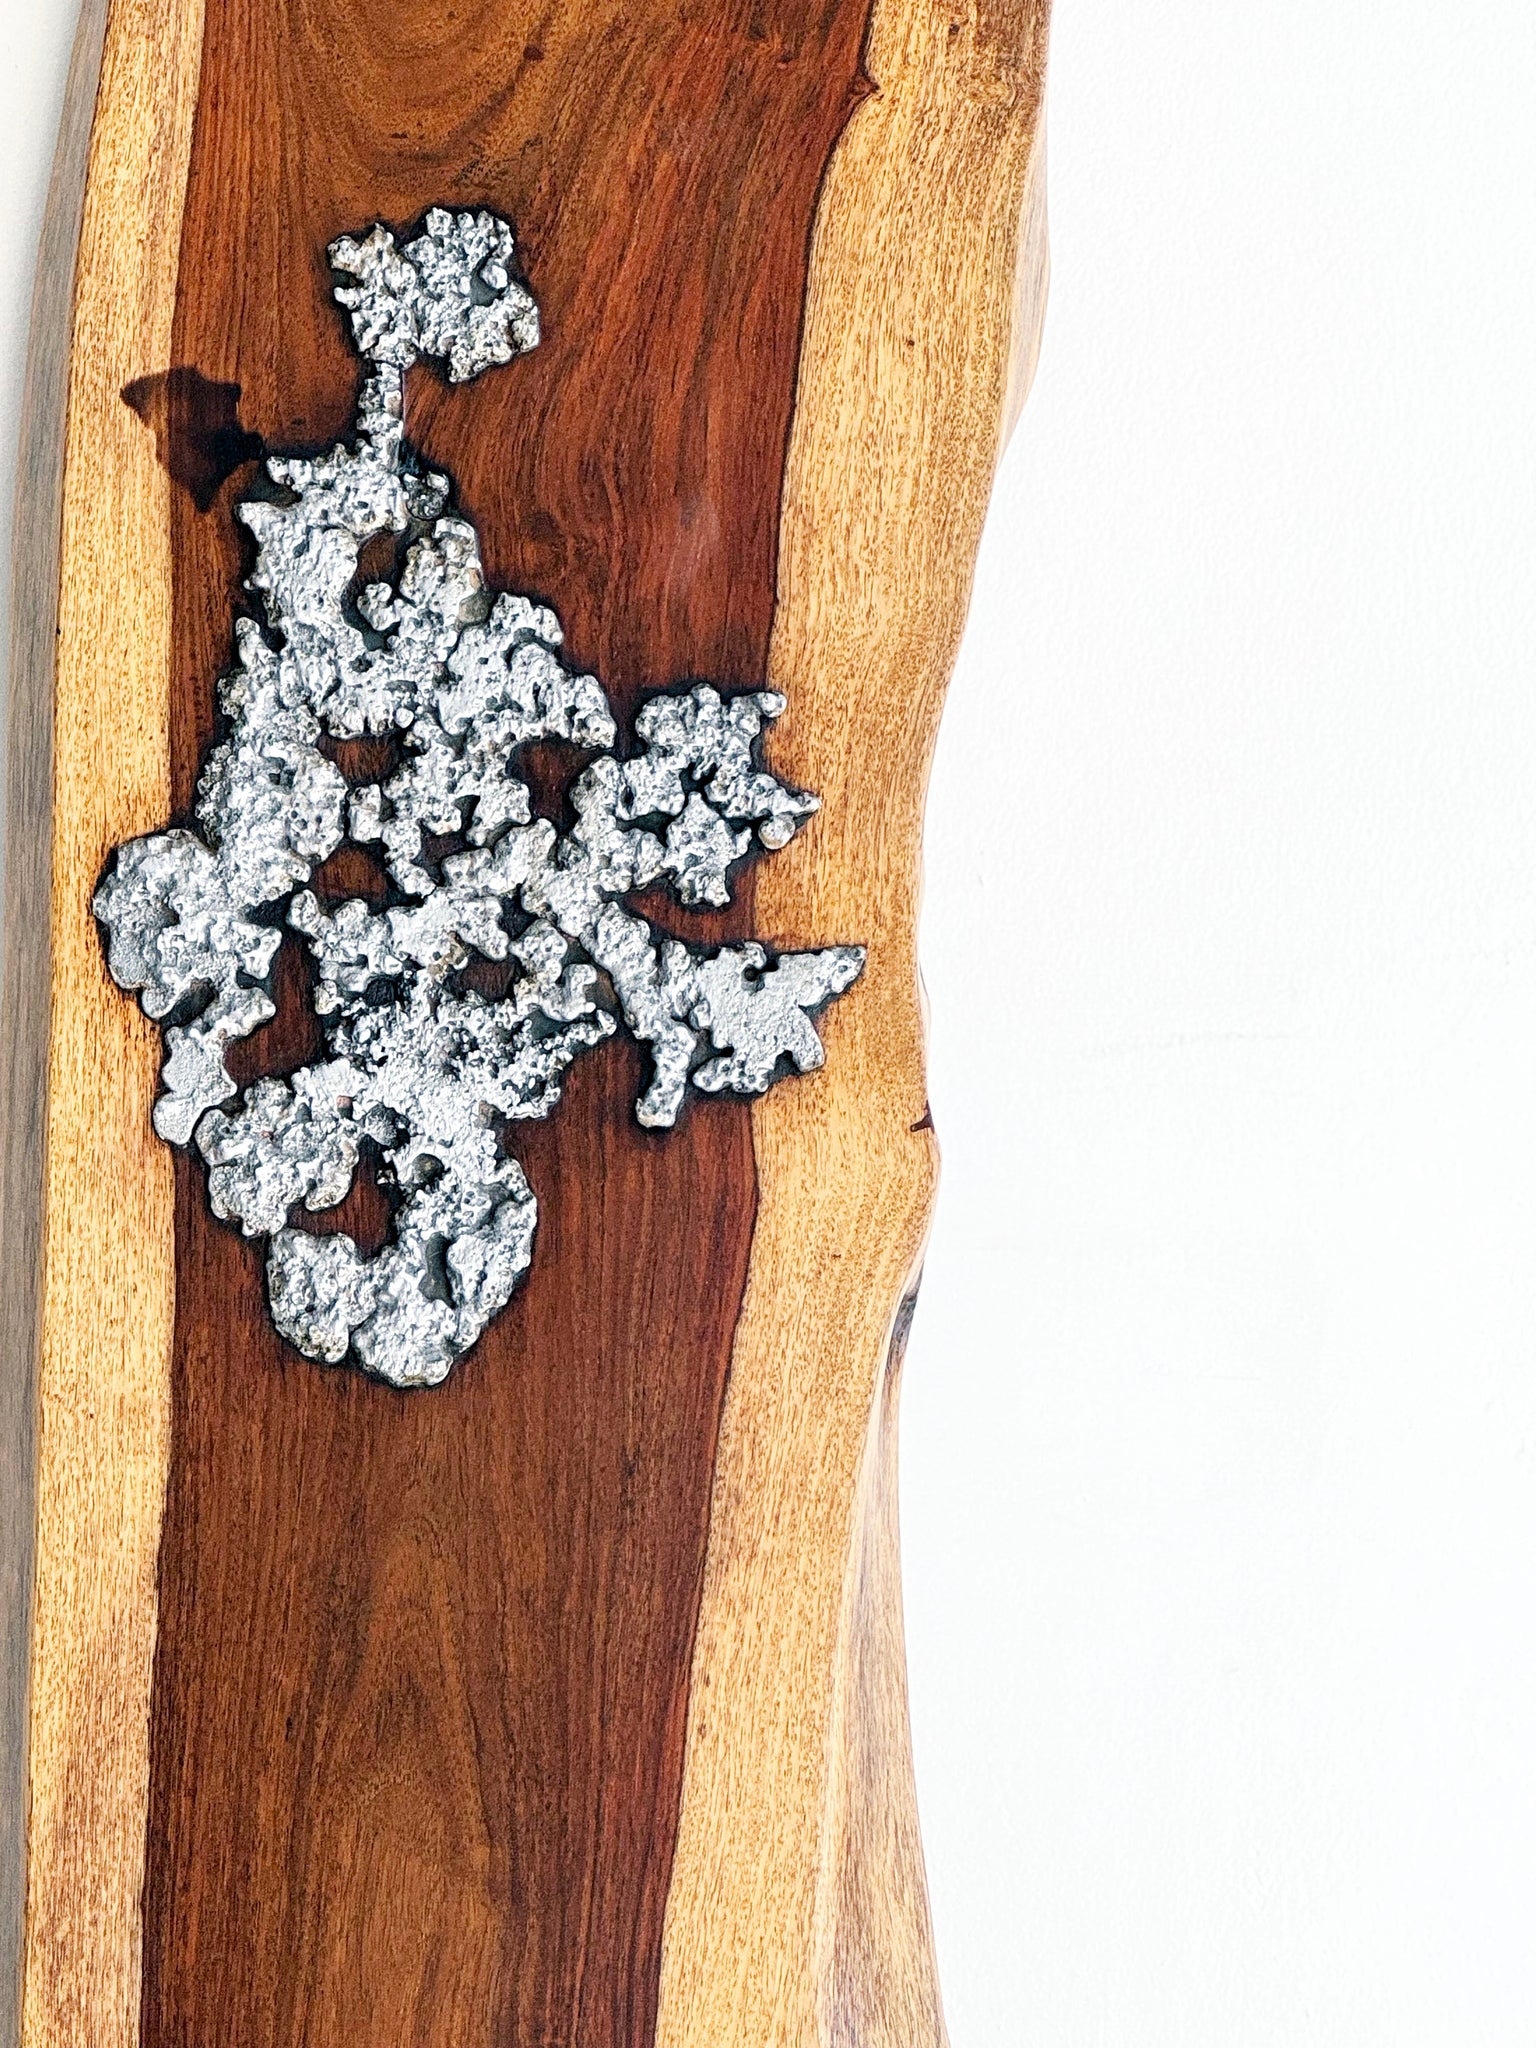 Molten Aluminium on Wood // 02